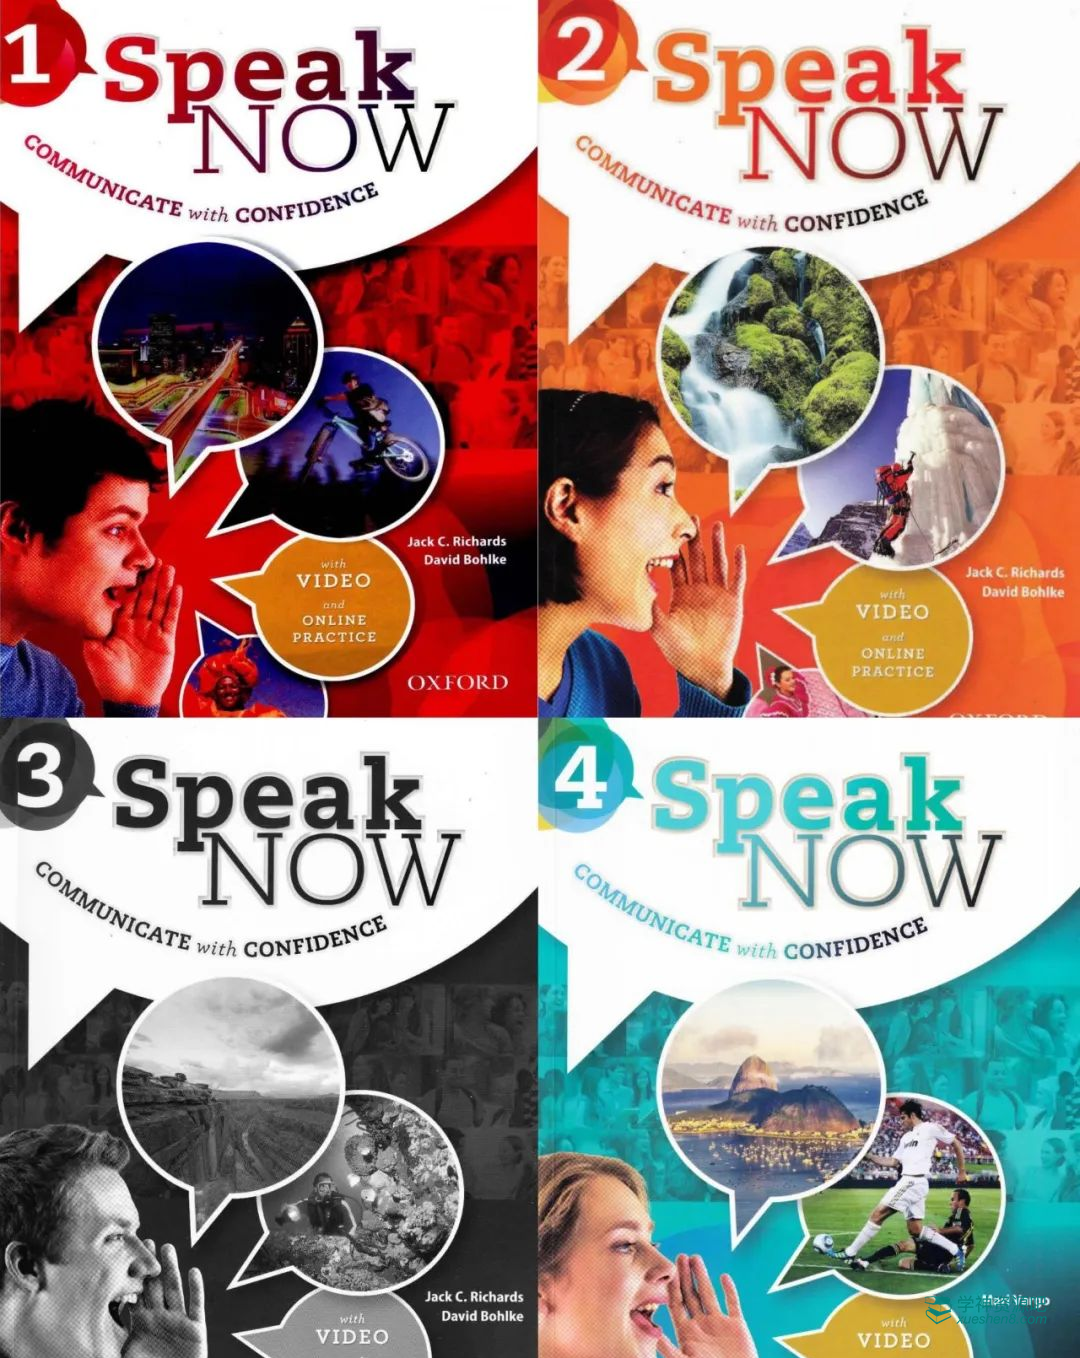 牛津大学顶级口语沟通教材《Speak Now》，提升英语表达能力